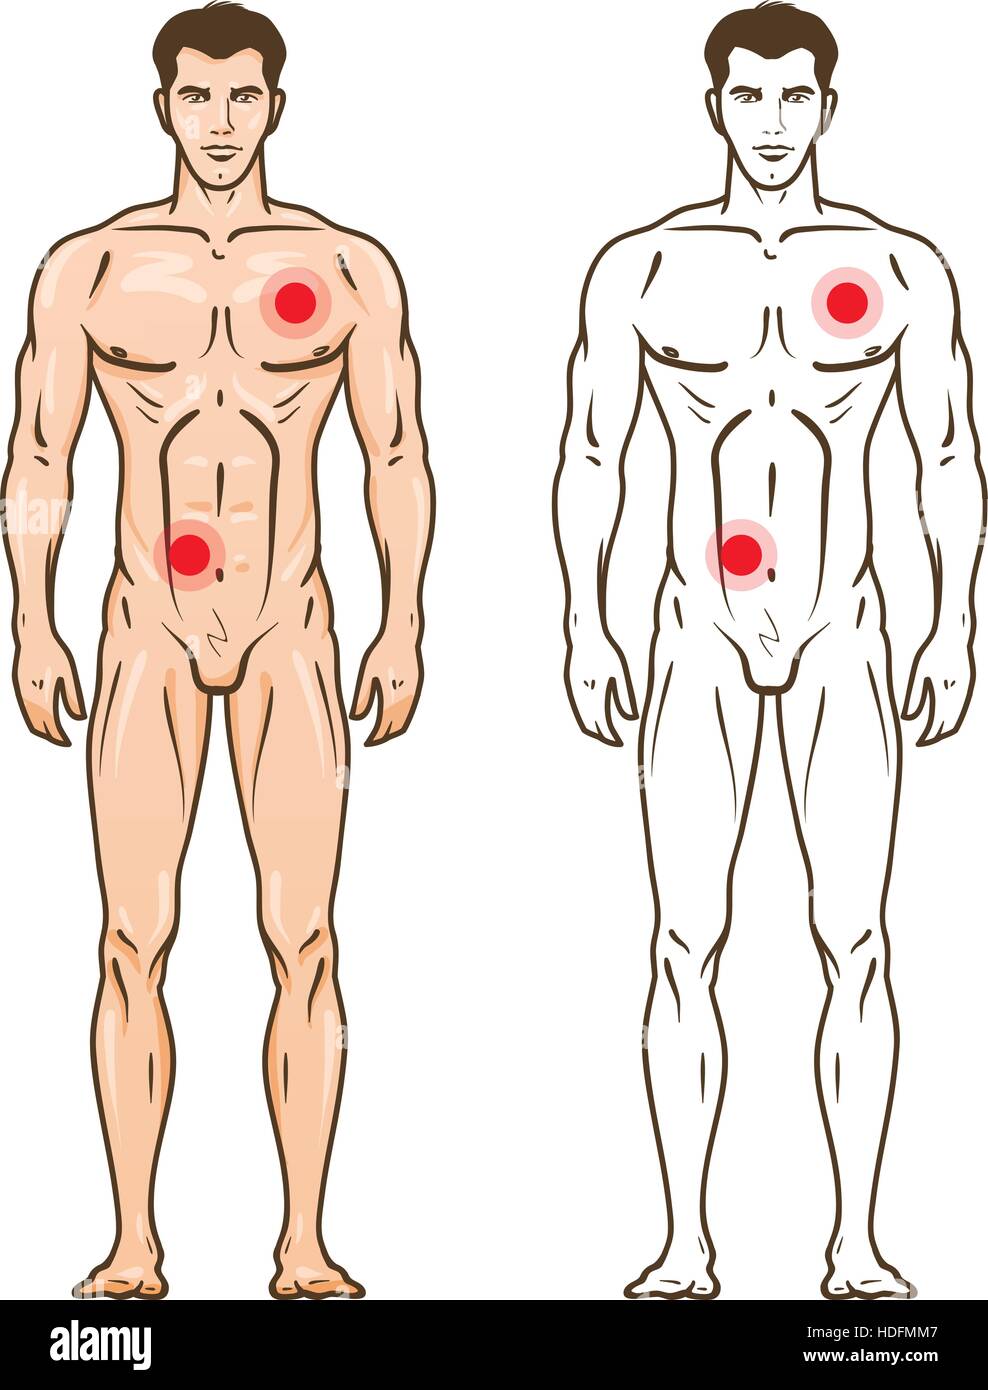 Mann-Silhouette mit Schwachstellen. Medizin-Infografik. Vektor-Illustration isoliert auf weißem Hintergrund Stock Vektor